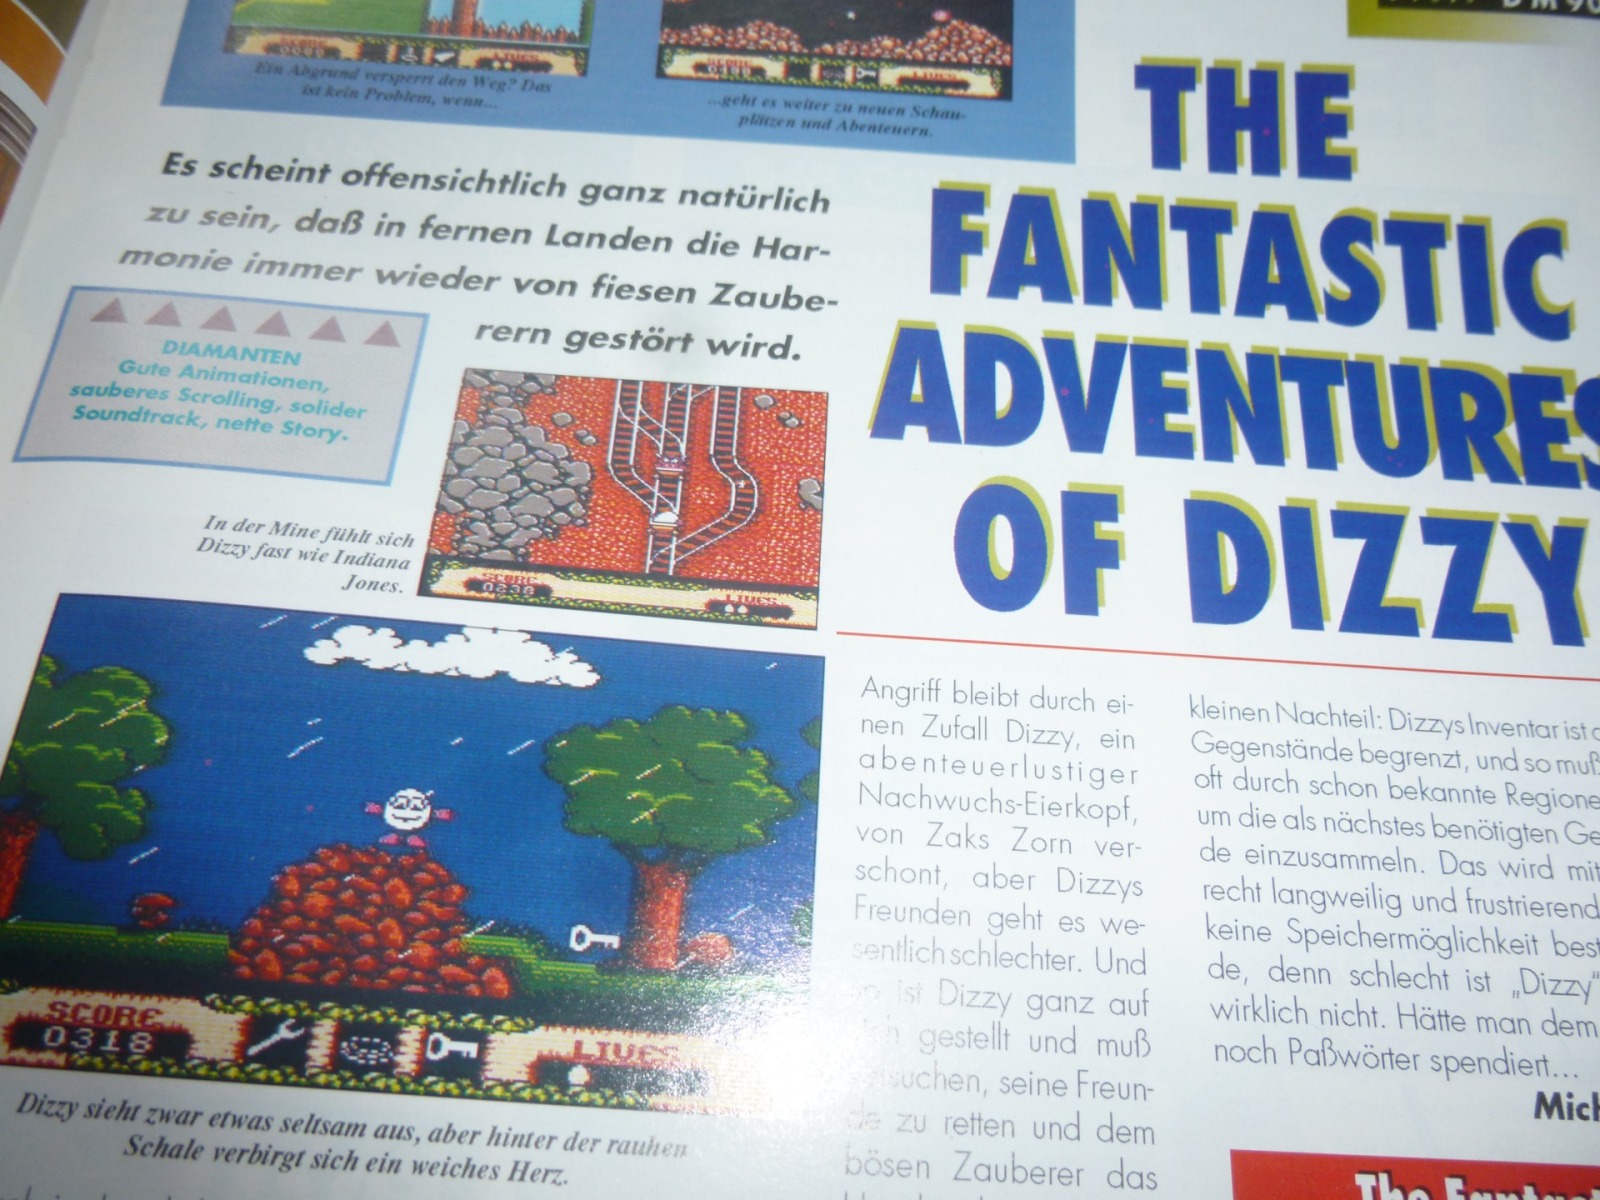 TOTAL Das unabhängige Magazin - 100% Nintendo - Ausgabe 7/93 1993 21